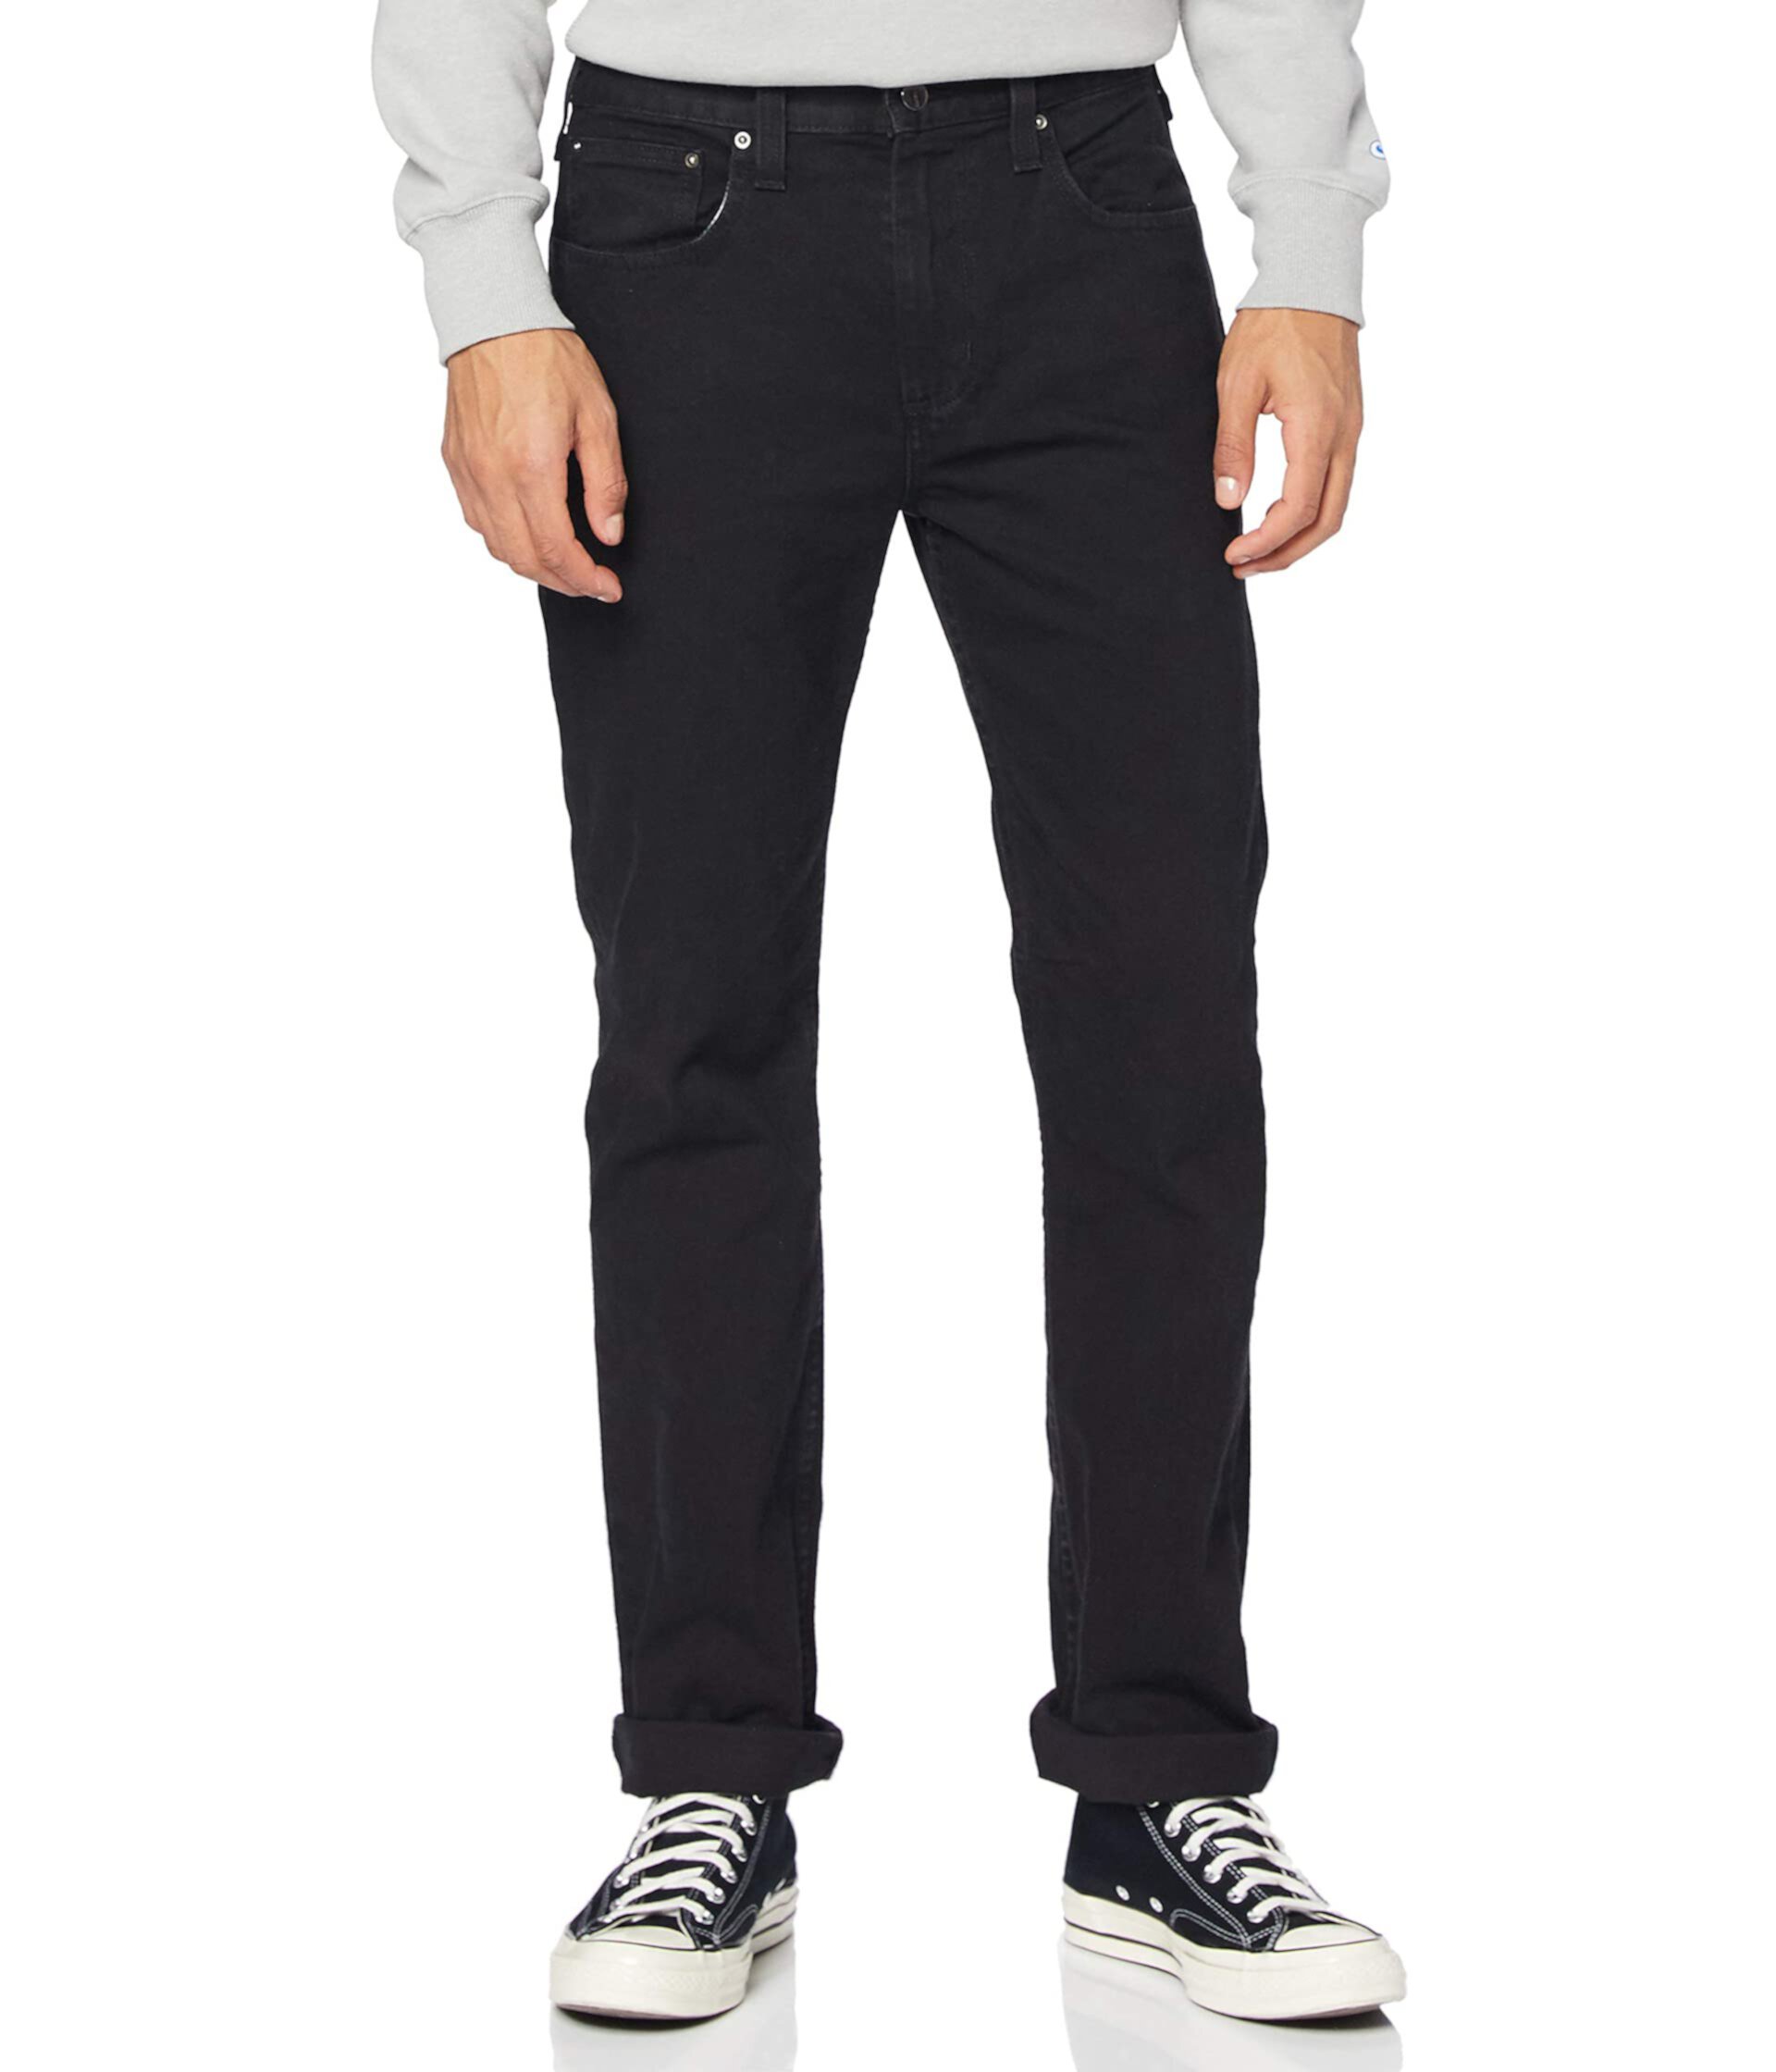 Свободные прямые джинсы Rugged Flex Carhartt